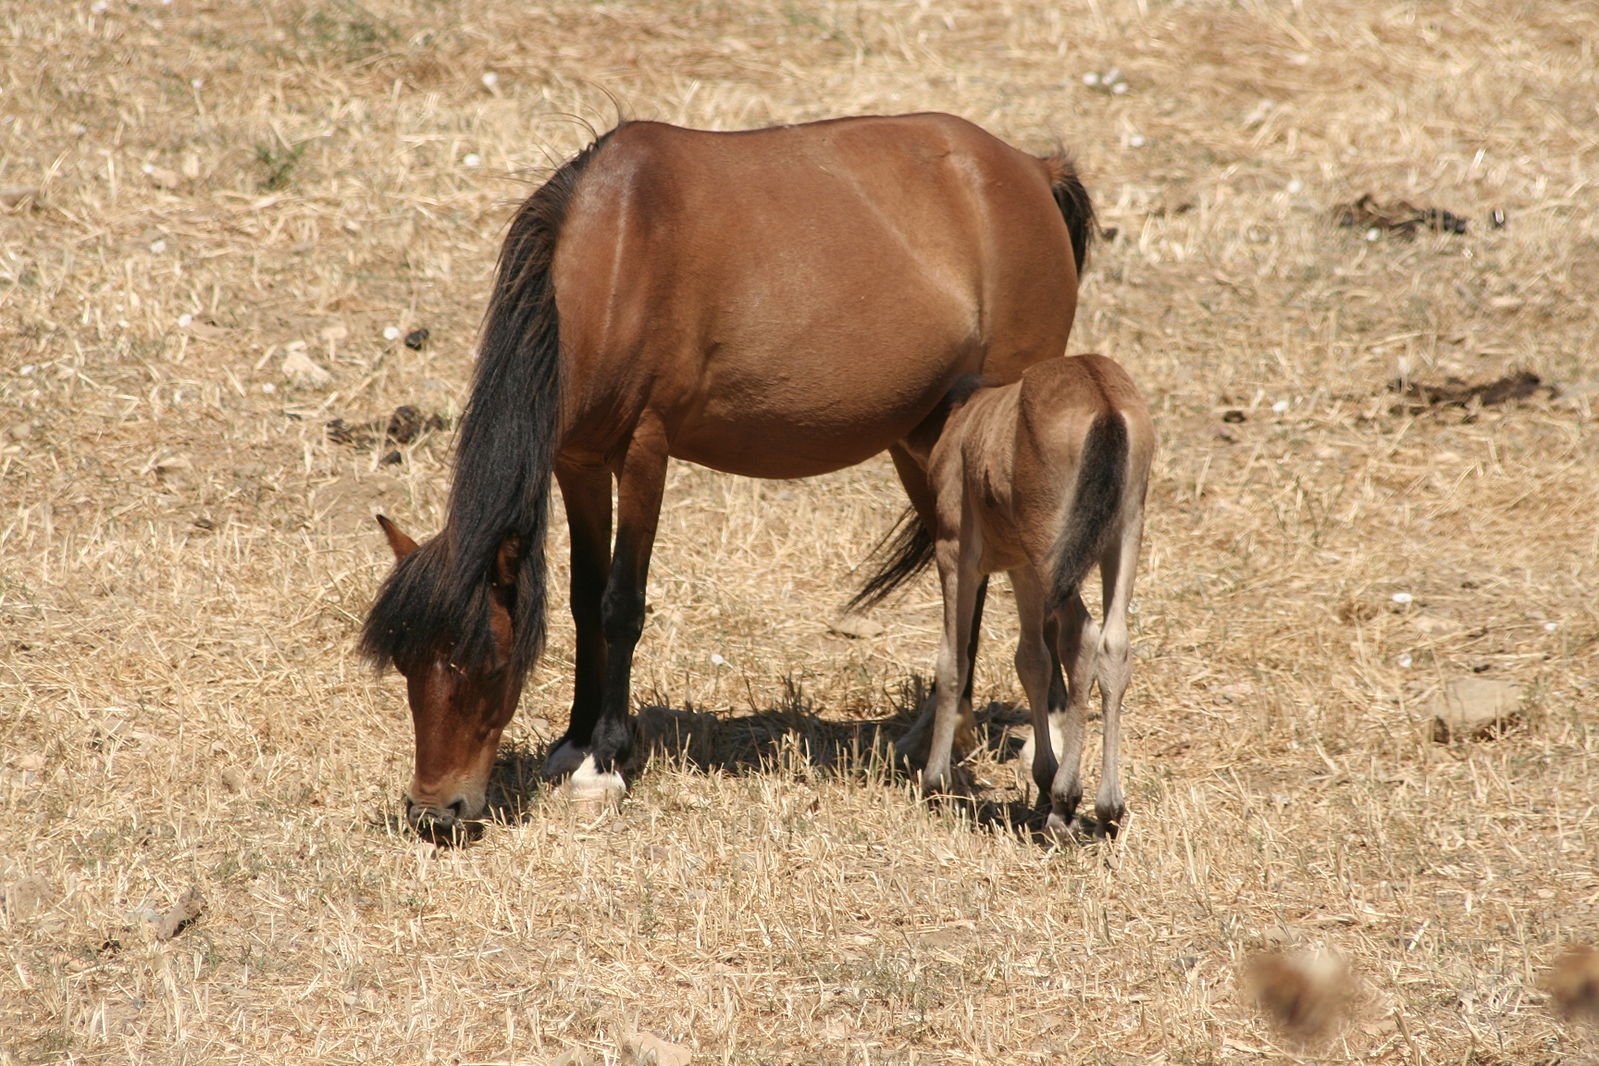 The Skyros pony